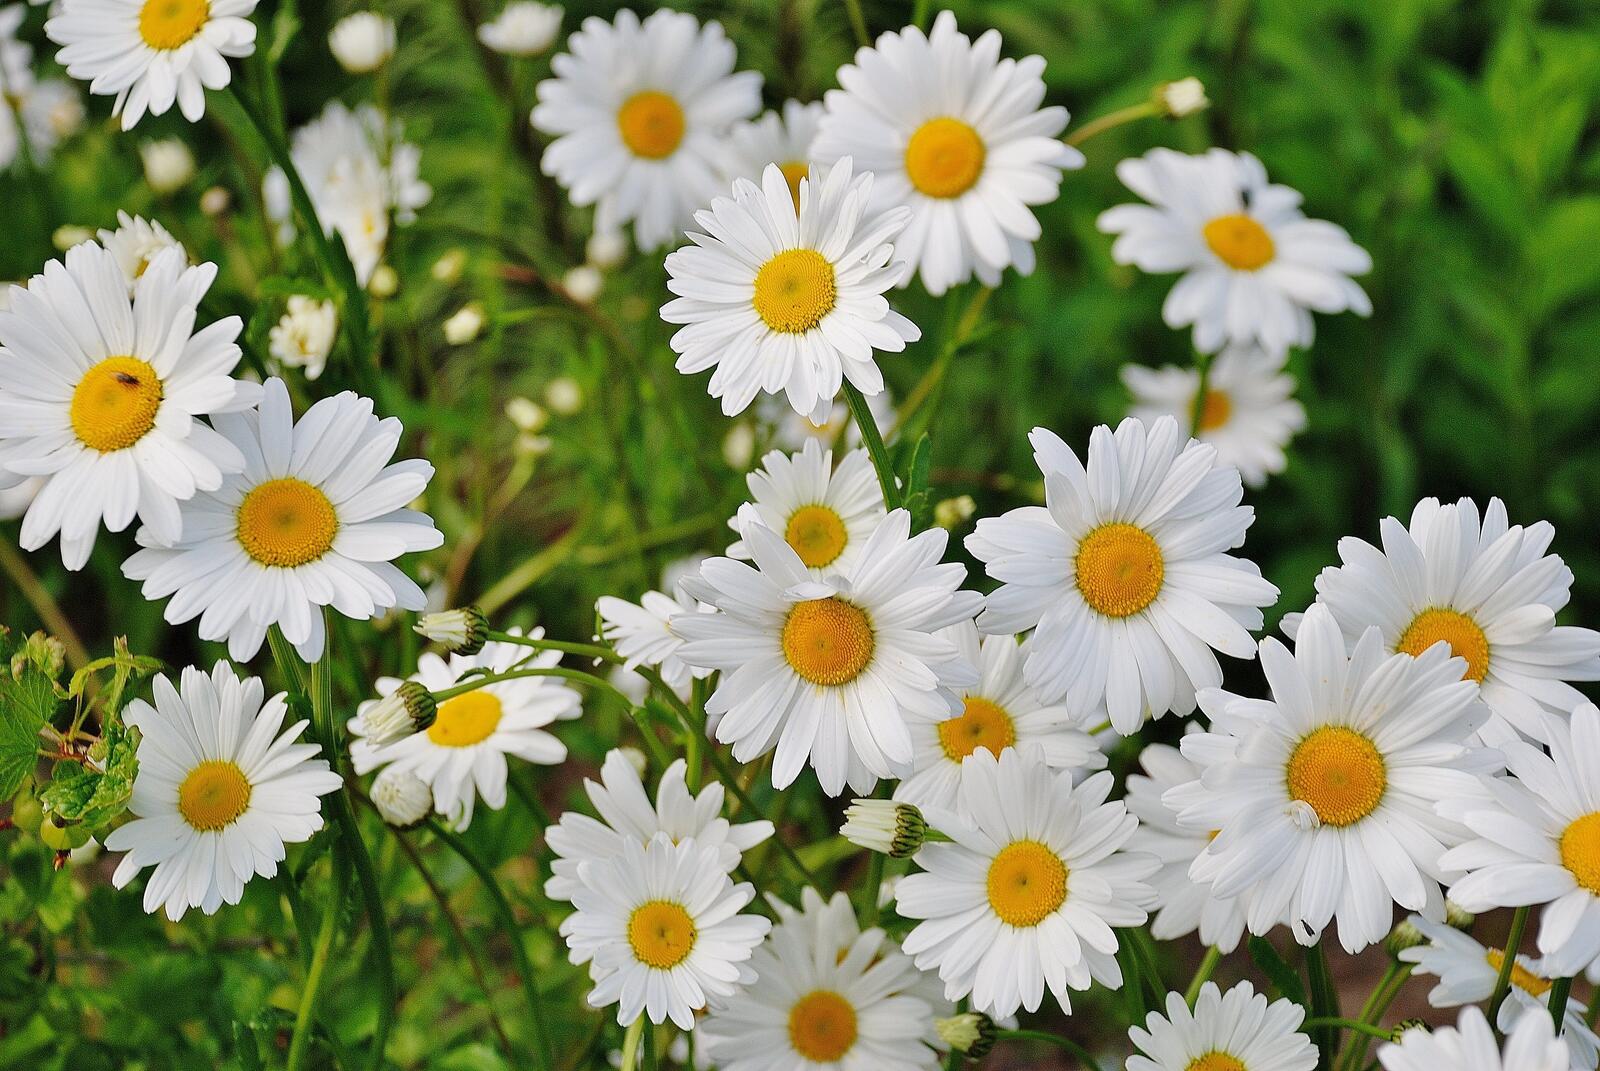 Free photo A shrub with snow-white daisies